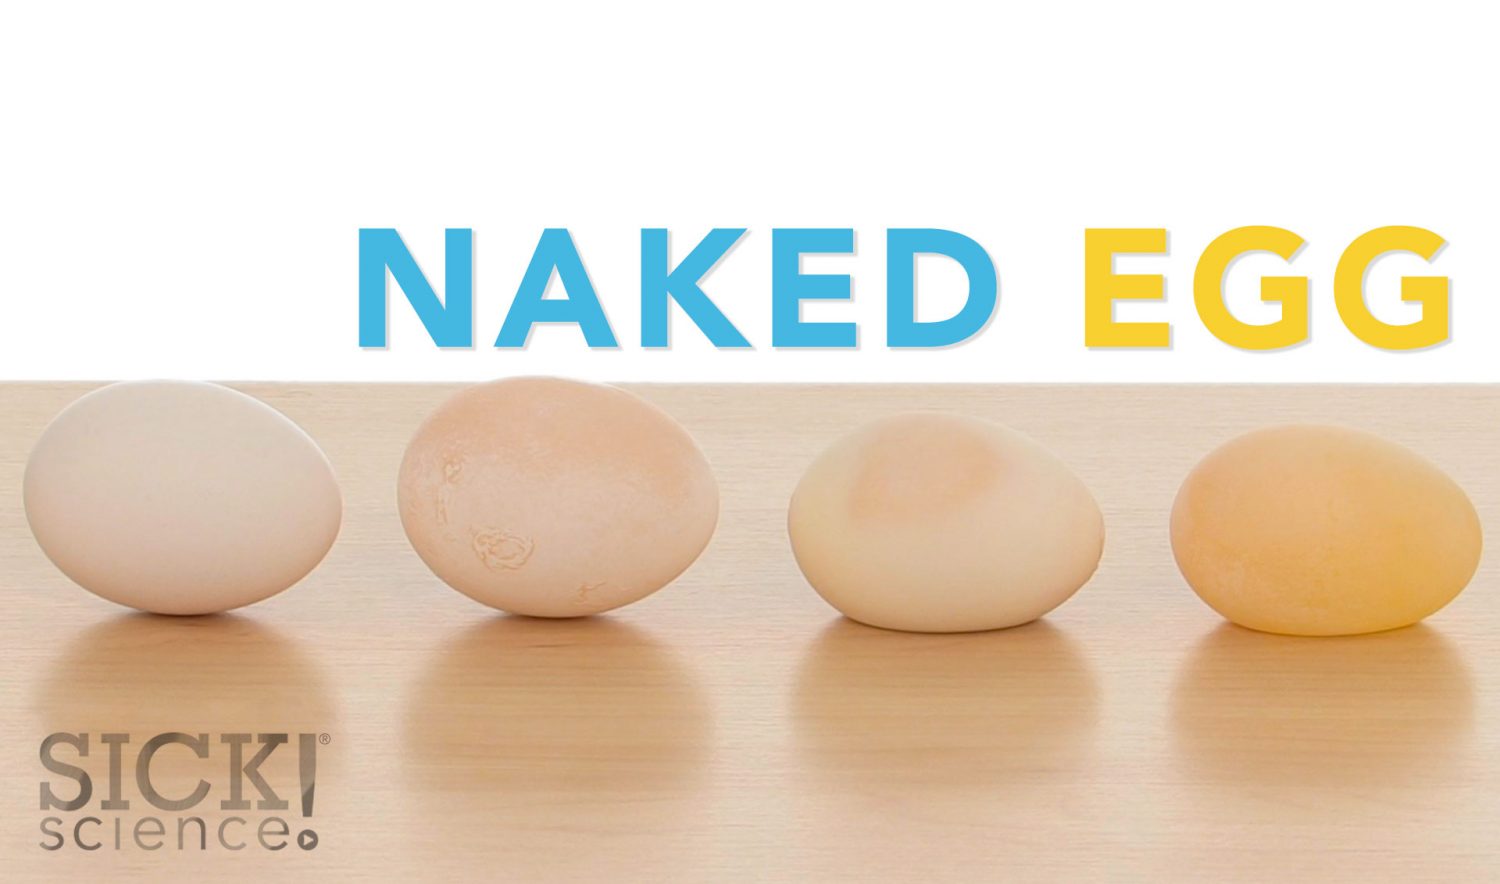 The Naked Egg